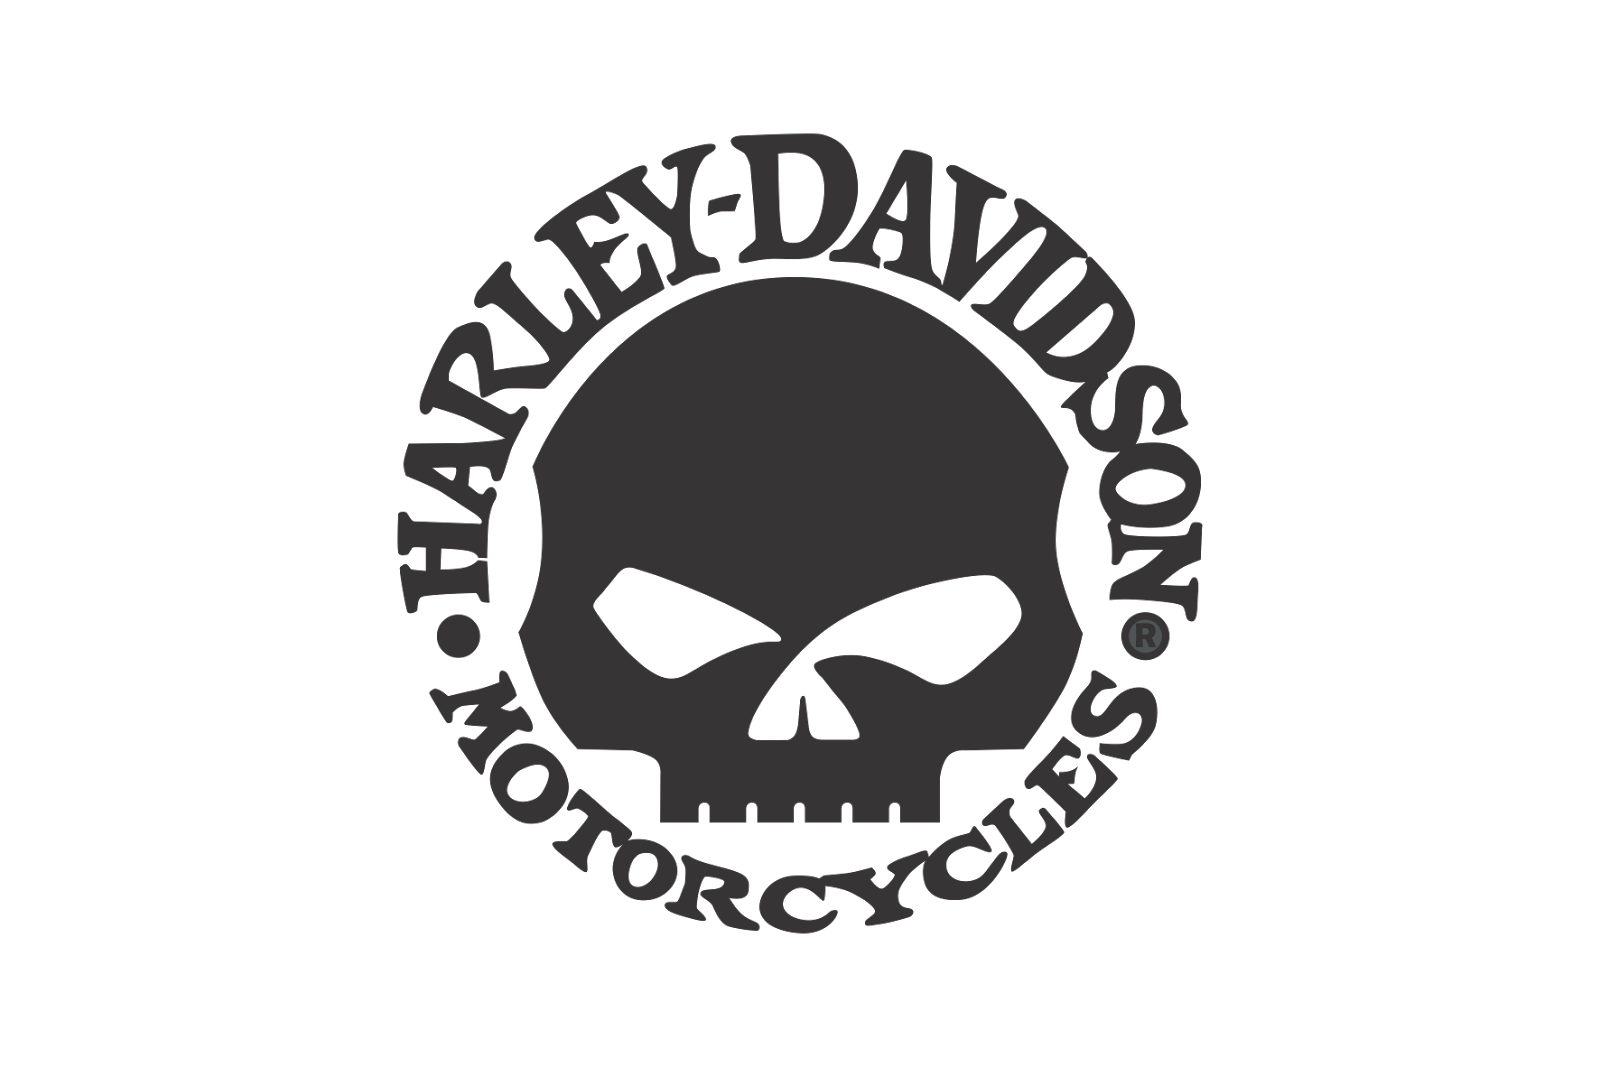 Harley Davidson PNG Transparent Images | PNG All